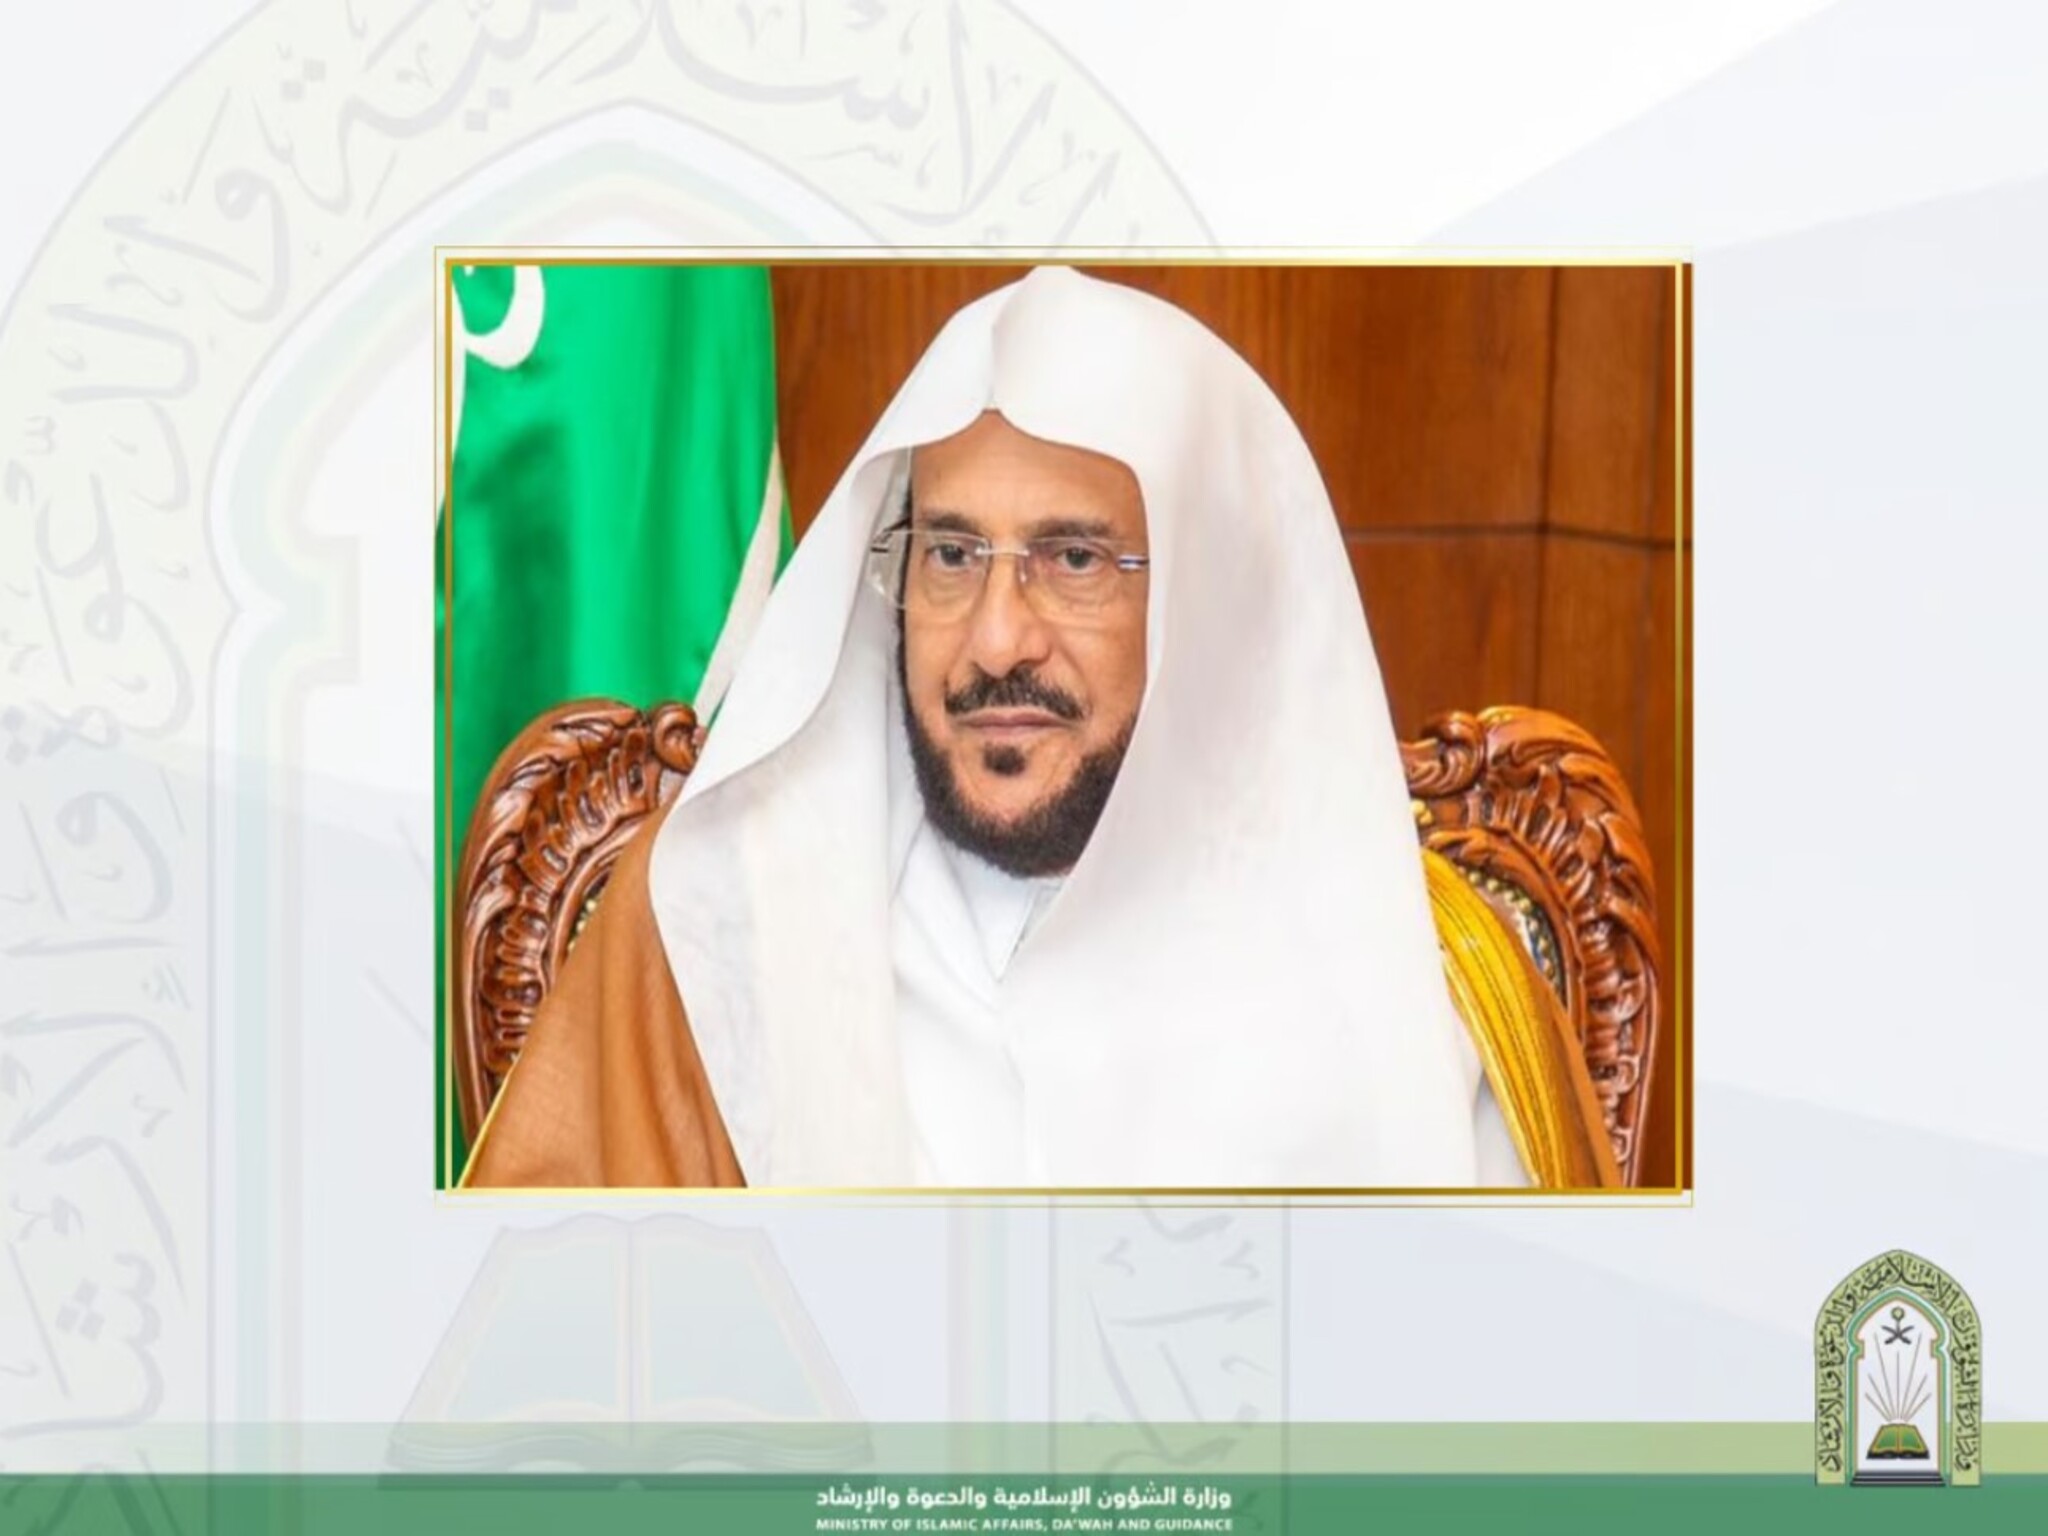 وزارة الشؤون الإسلامية تُطلق البرنامج التوعوي الجديد «منهج السلف الصالح»